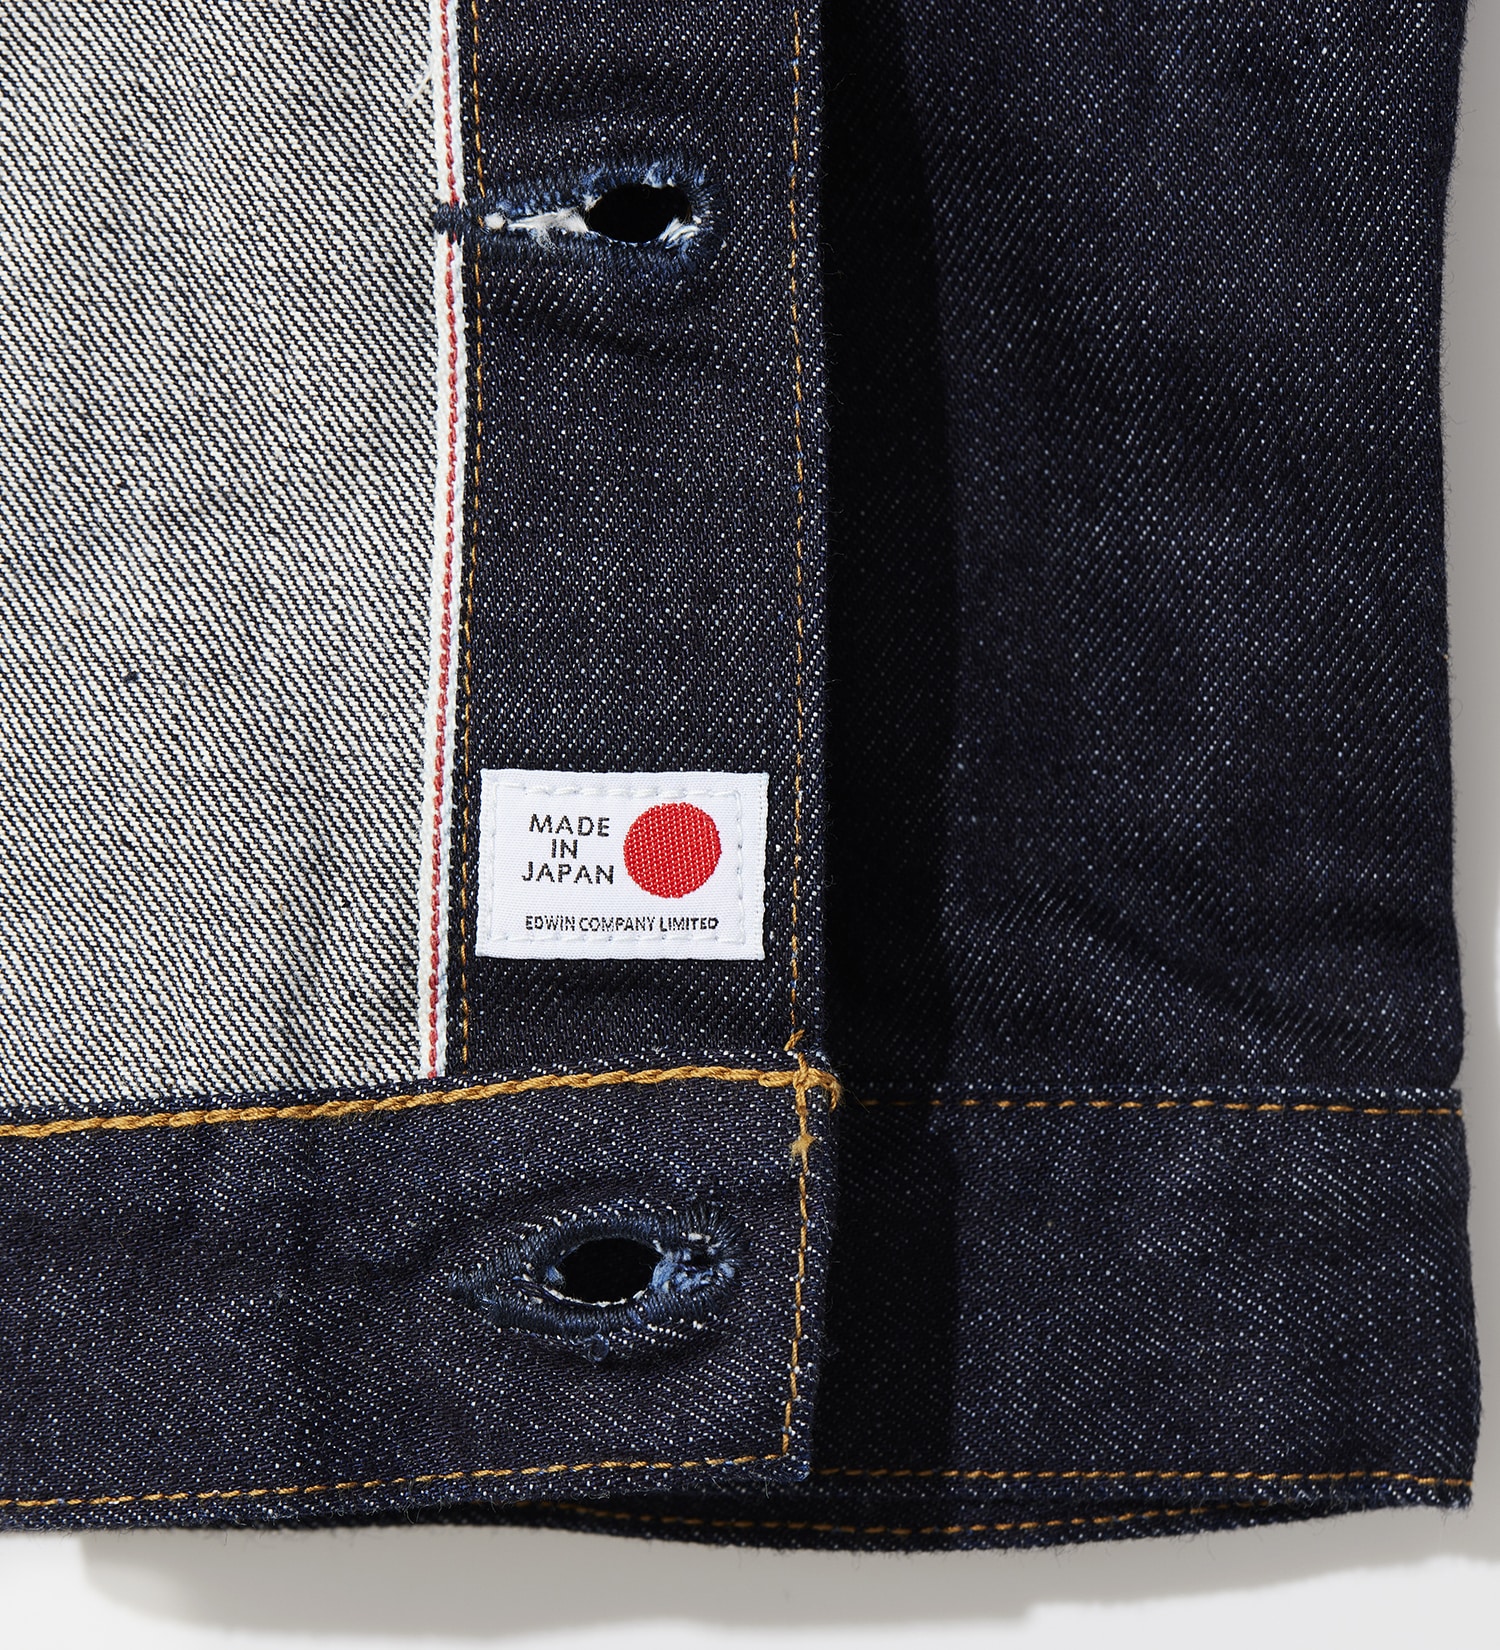 EDWIN(エドウイン)の【試着対象】505ZXX デニム ジャケット 60s DENIM JACKET セットアップ対応 MADE IN JAPAN 日本製|ジャケット/アウター/デニムジャケット/メンズ|インディゴブルー